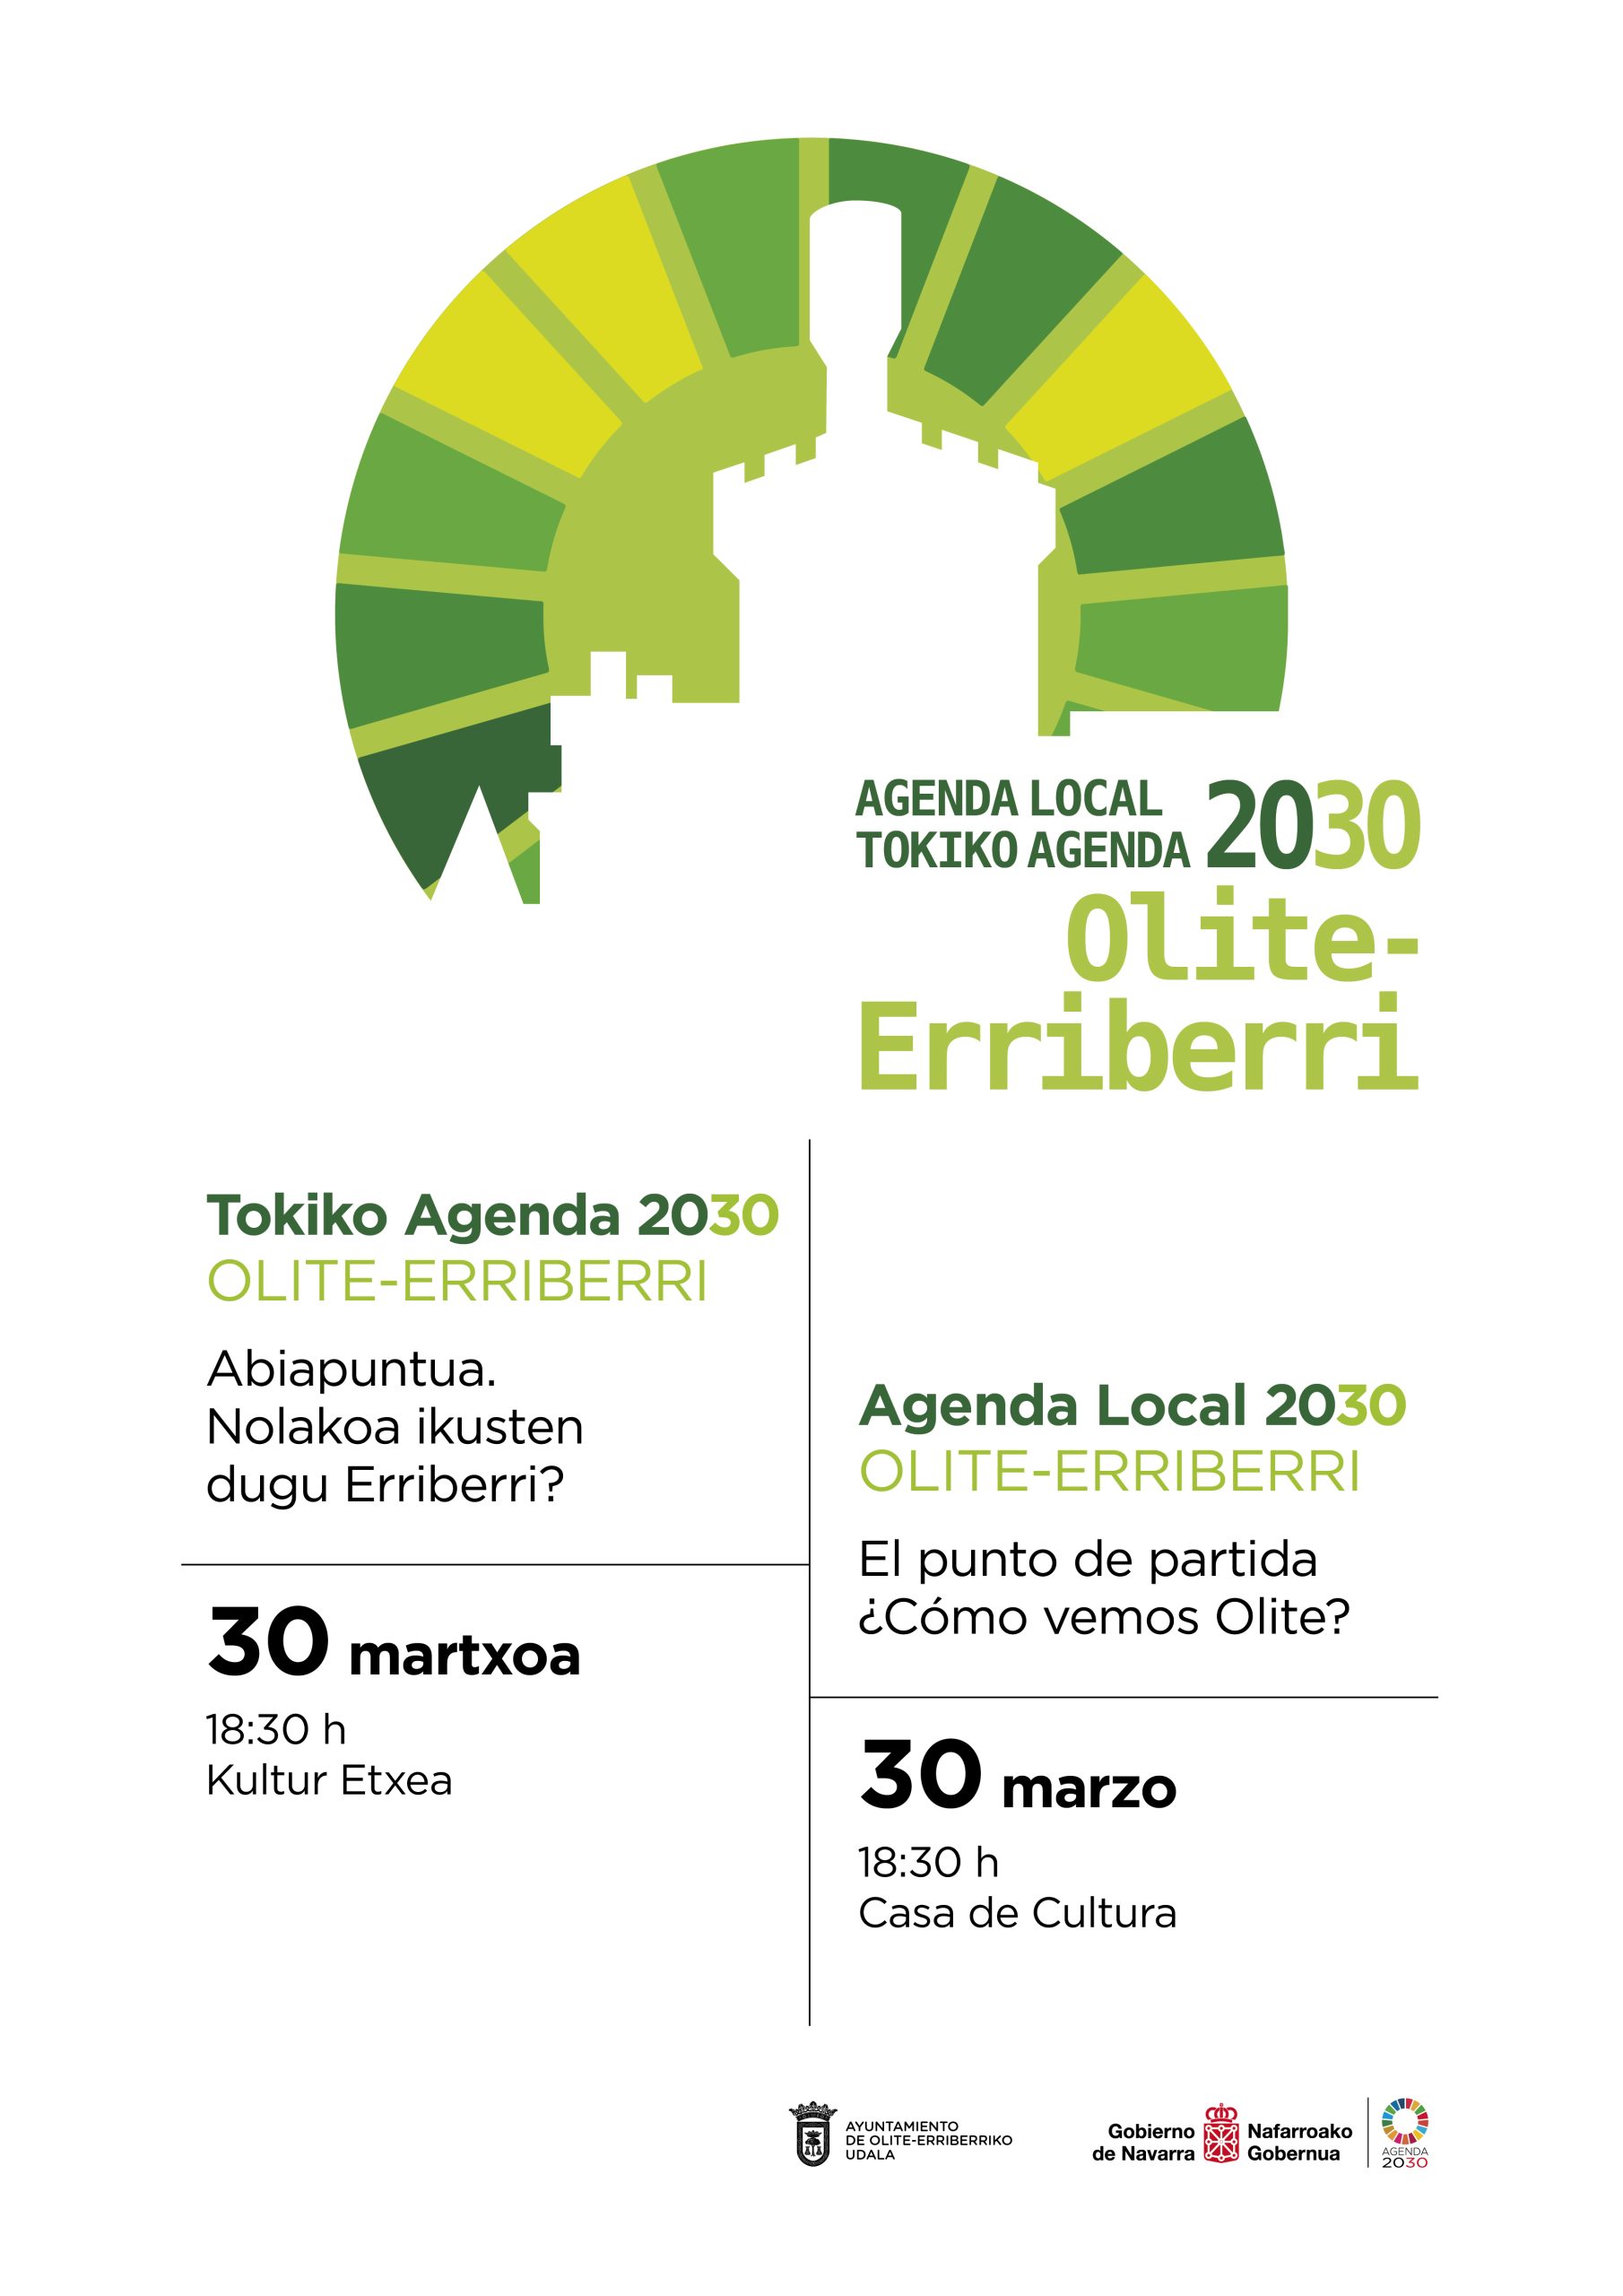 Agenda local 2030: jueves 30 de marzo